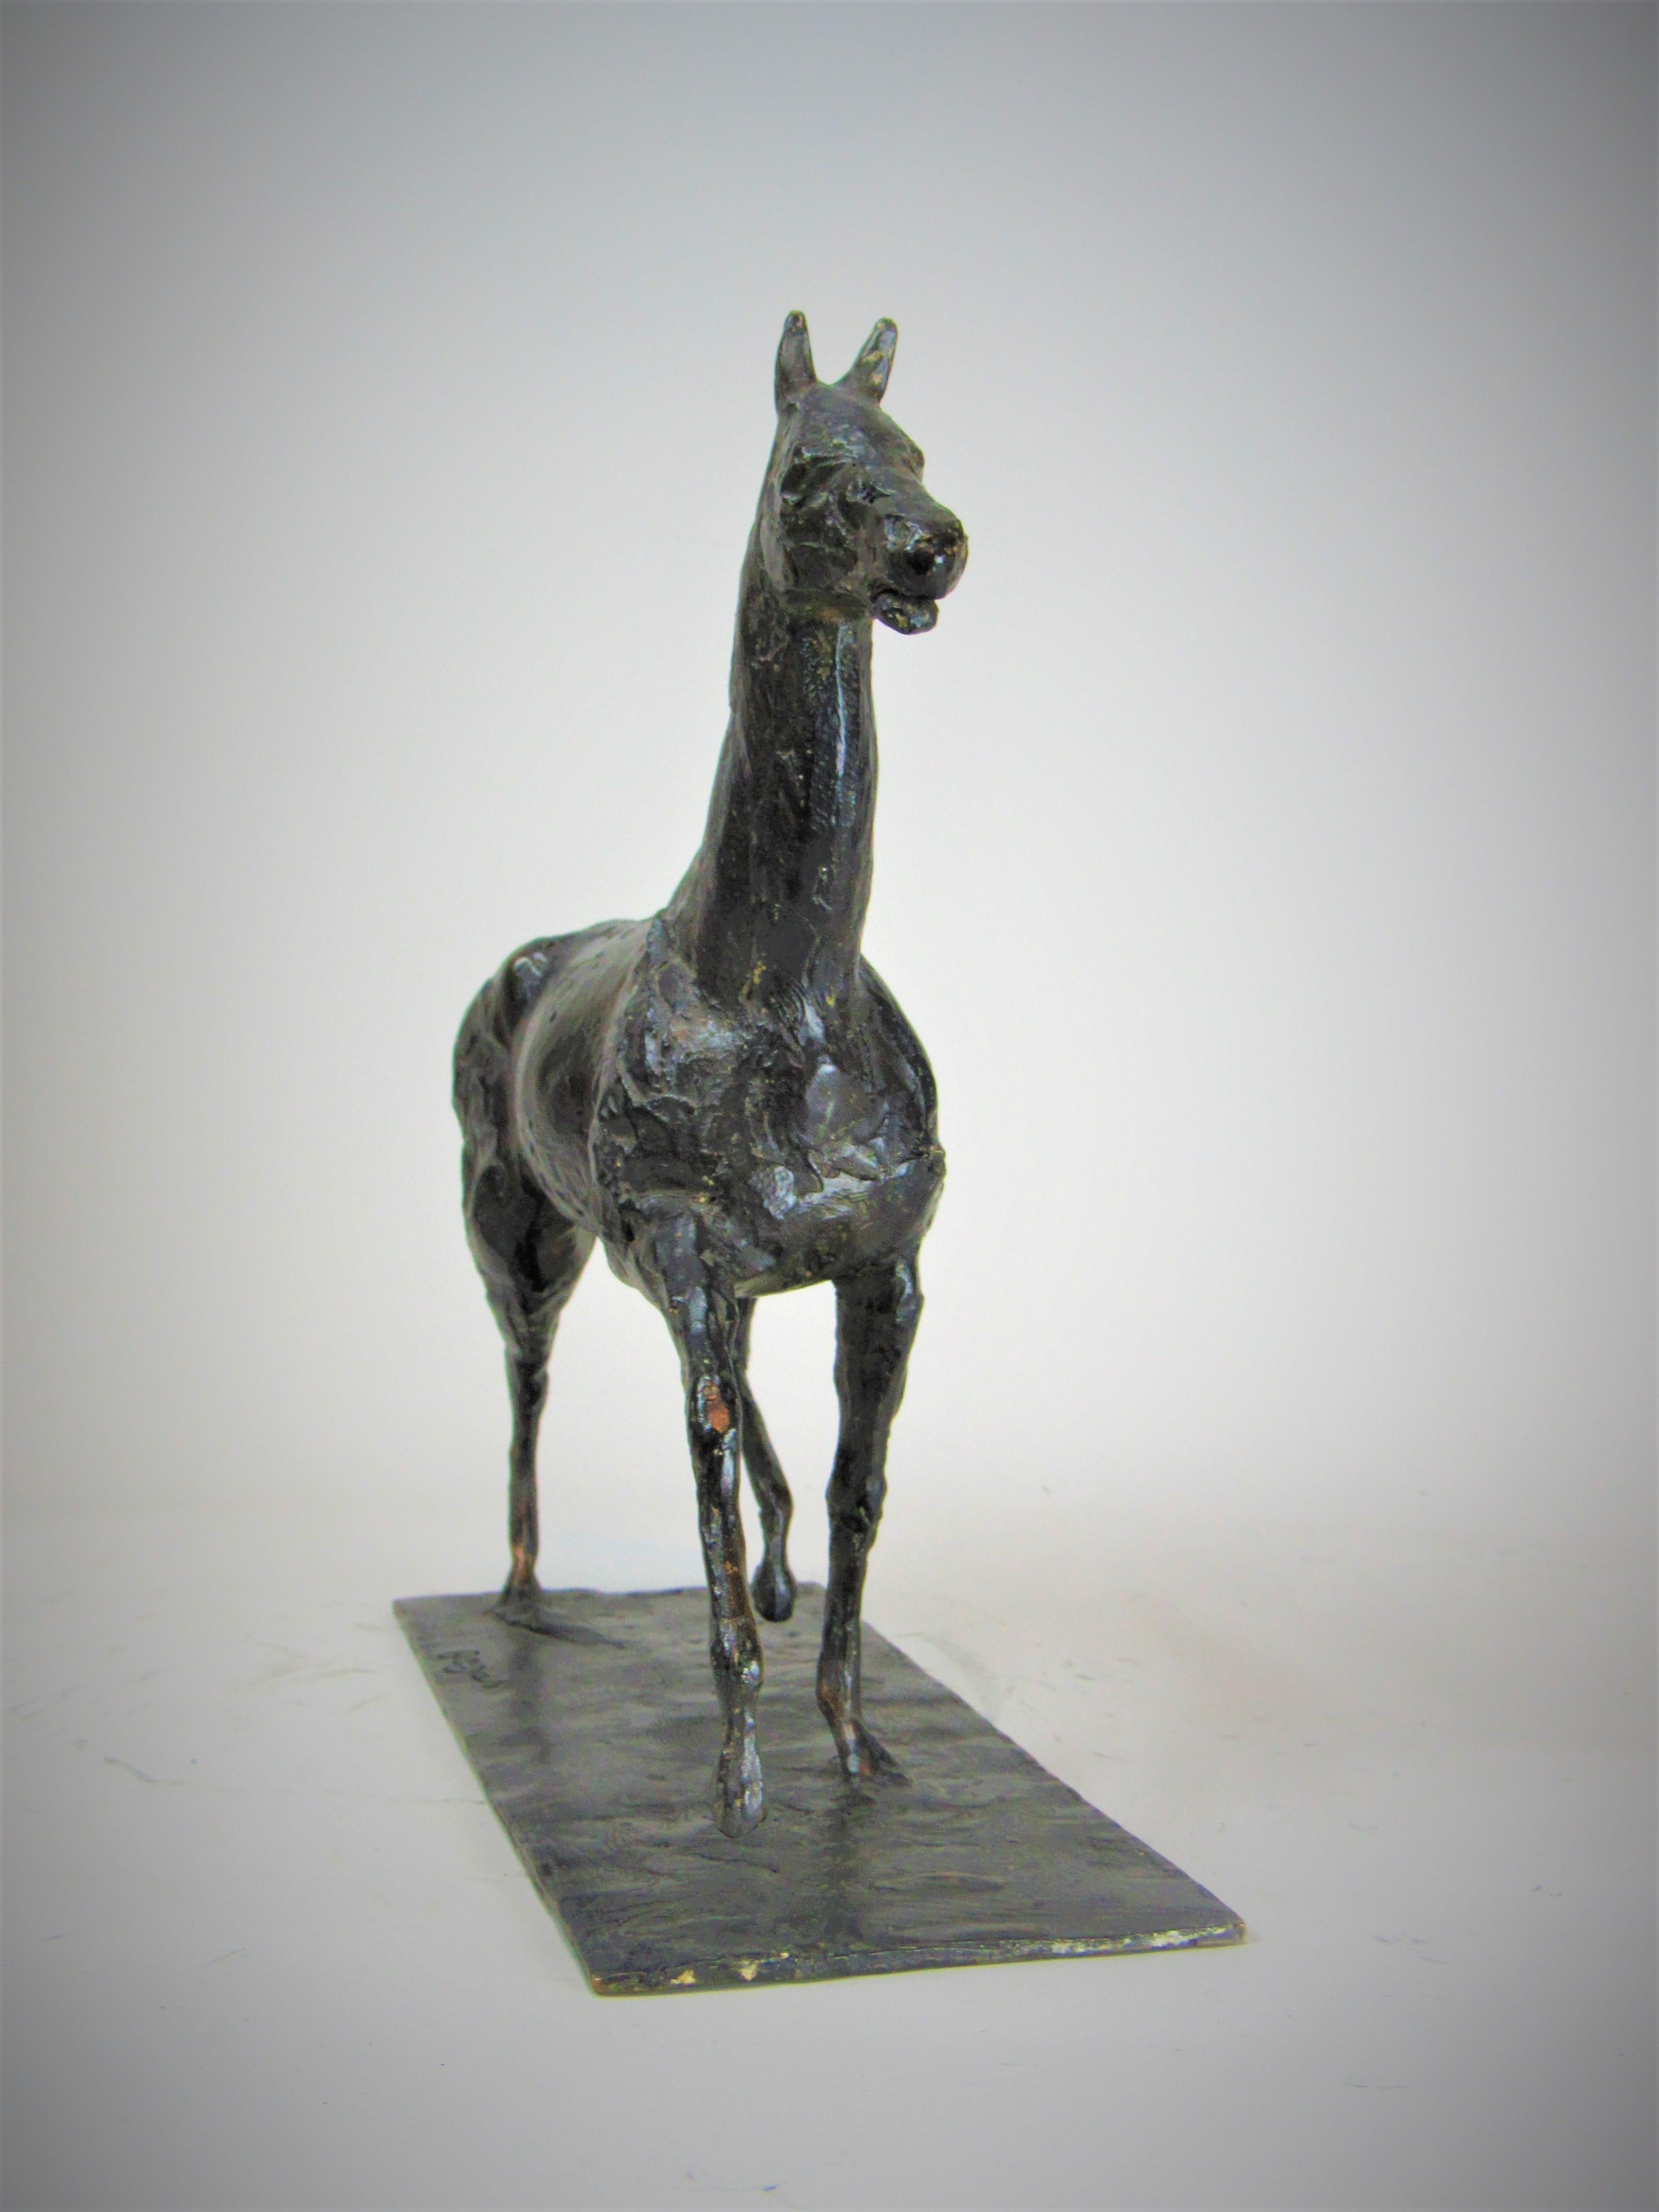 Certified Edgard Degas Bronze of a horse : (Horse walking at a high pace) - Sculpture by Edgar Degas